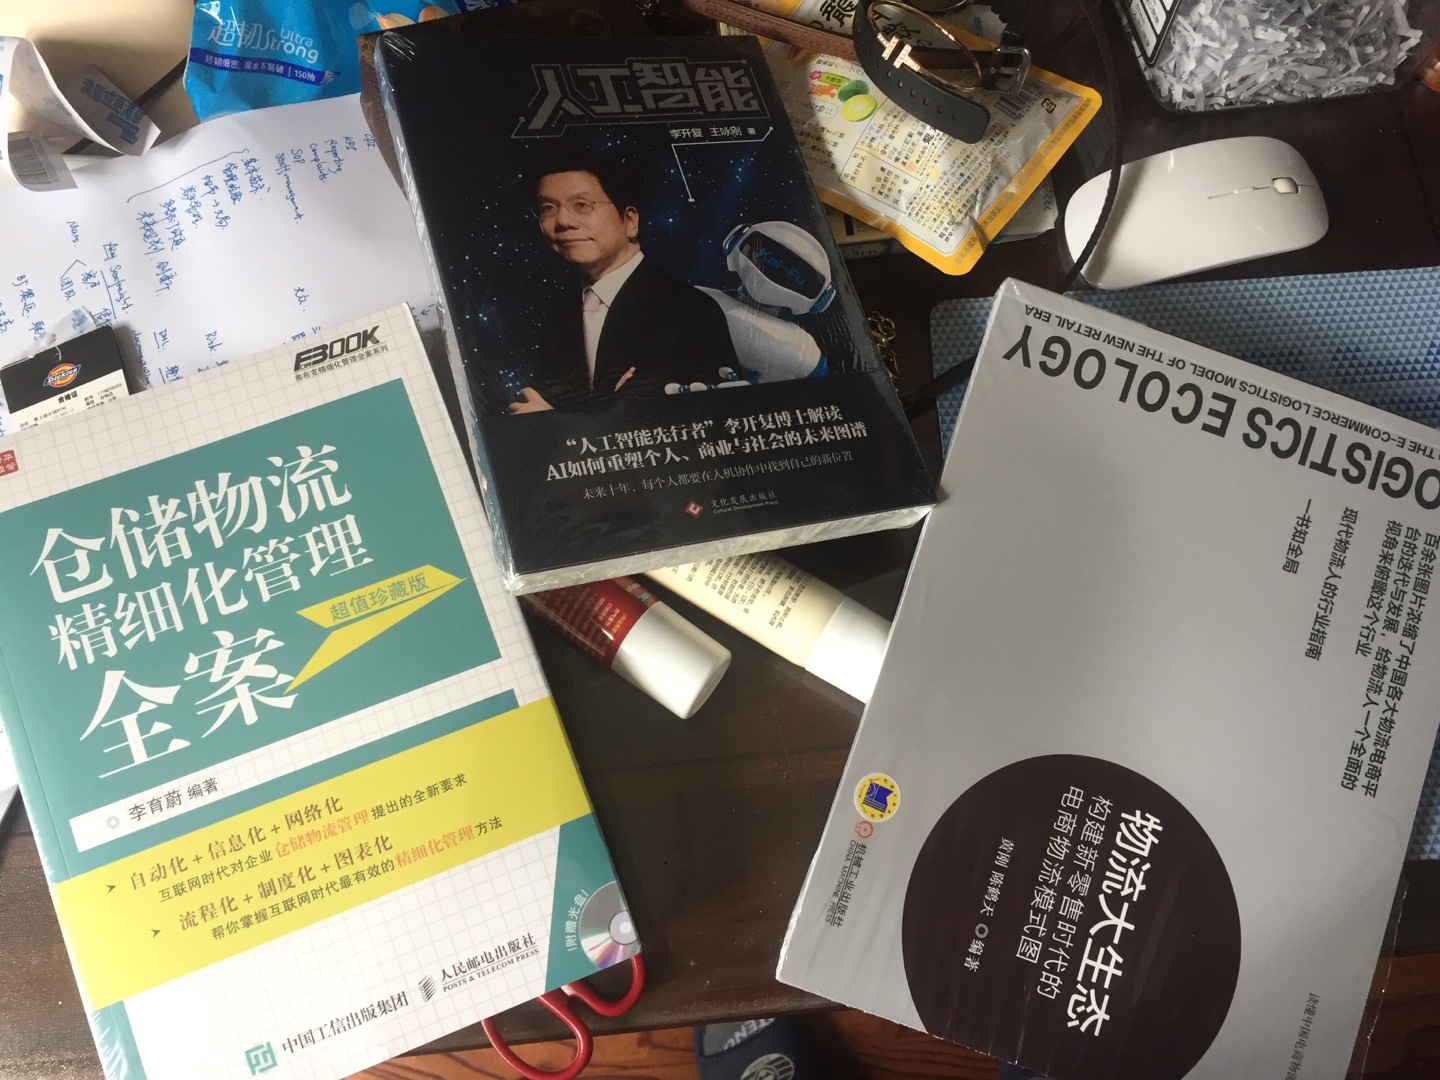 很快就送到了，之前吴晓波的节目里面采访过李开复老师，希望能从这本书收获很多。